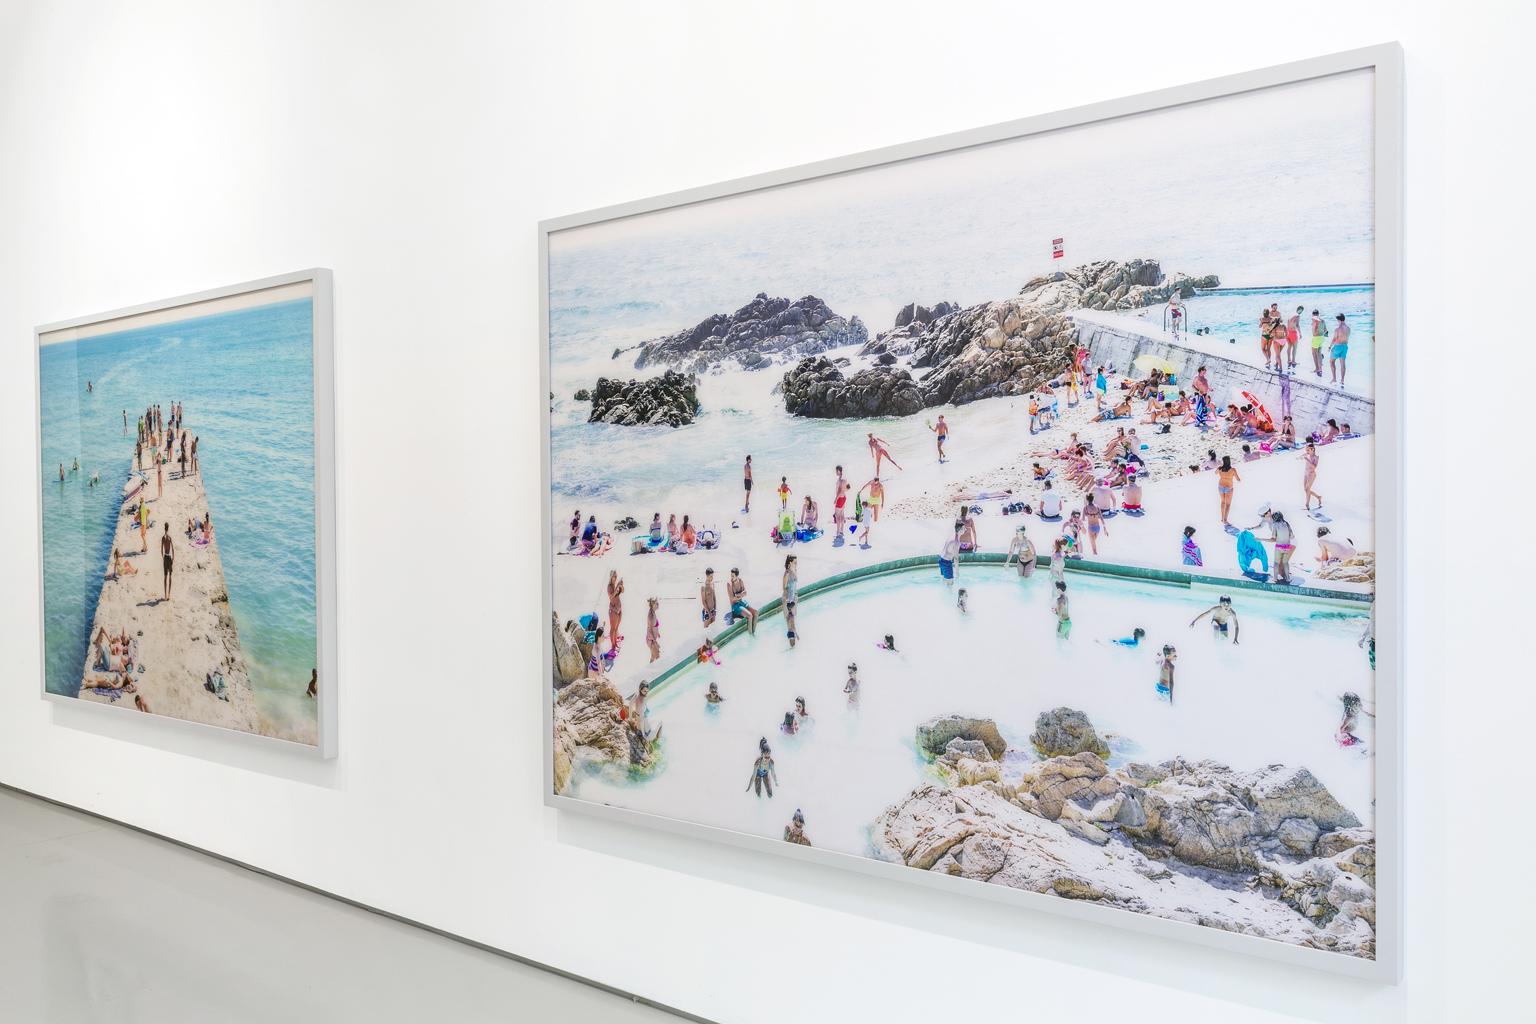 Photographie à grande échelle d'une scène emblématique de plage estivale dans les Pouilles, réalisée par le photographe italien Massimo Vitali, réputé pour ses observations topographiques à grande échelle des rites et rituels estivaux des loisirs